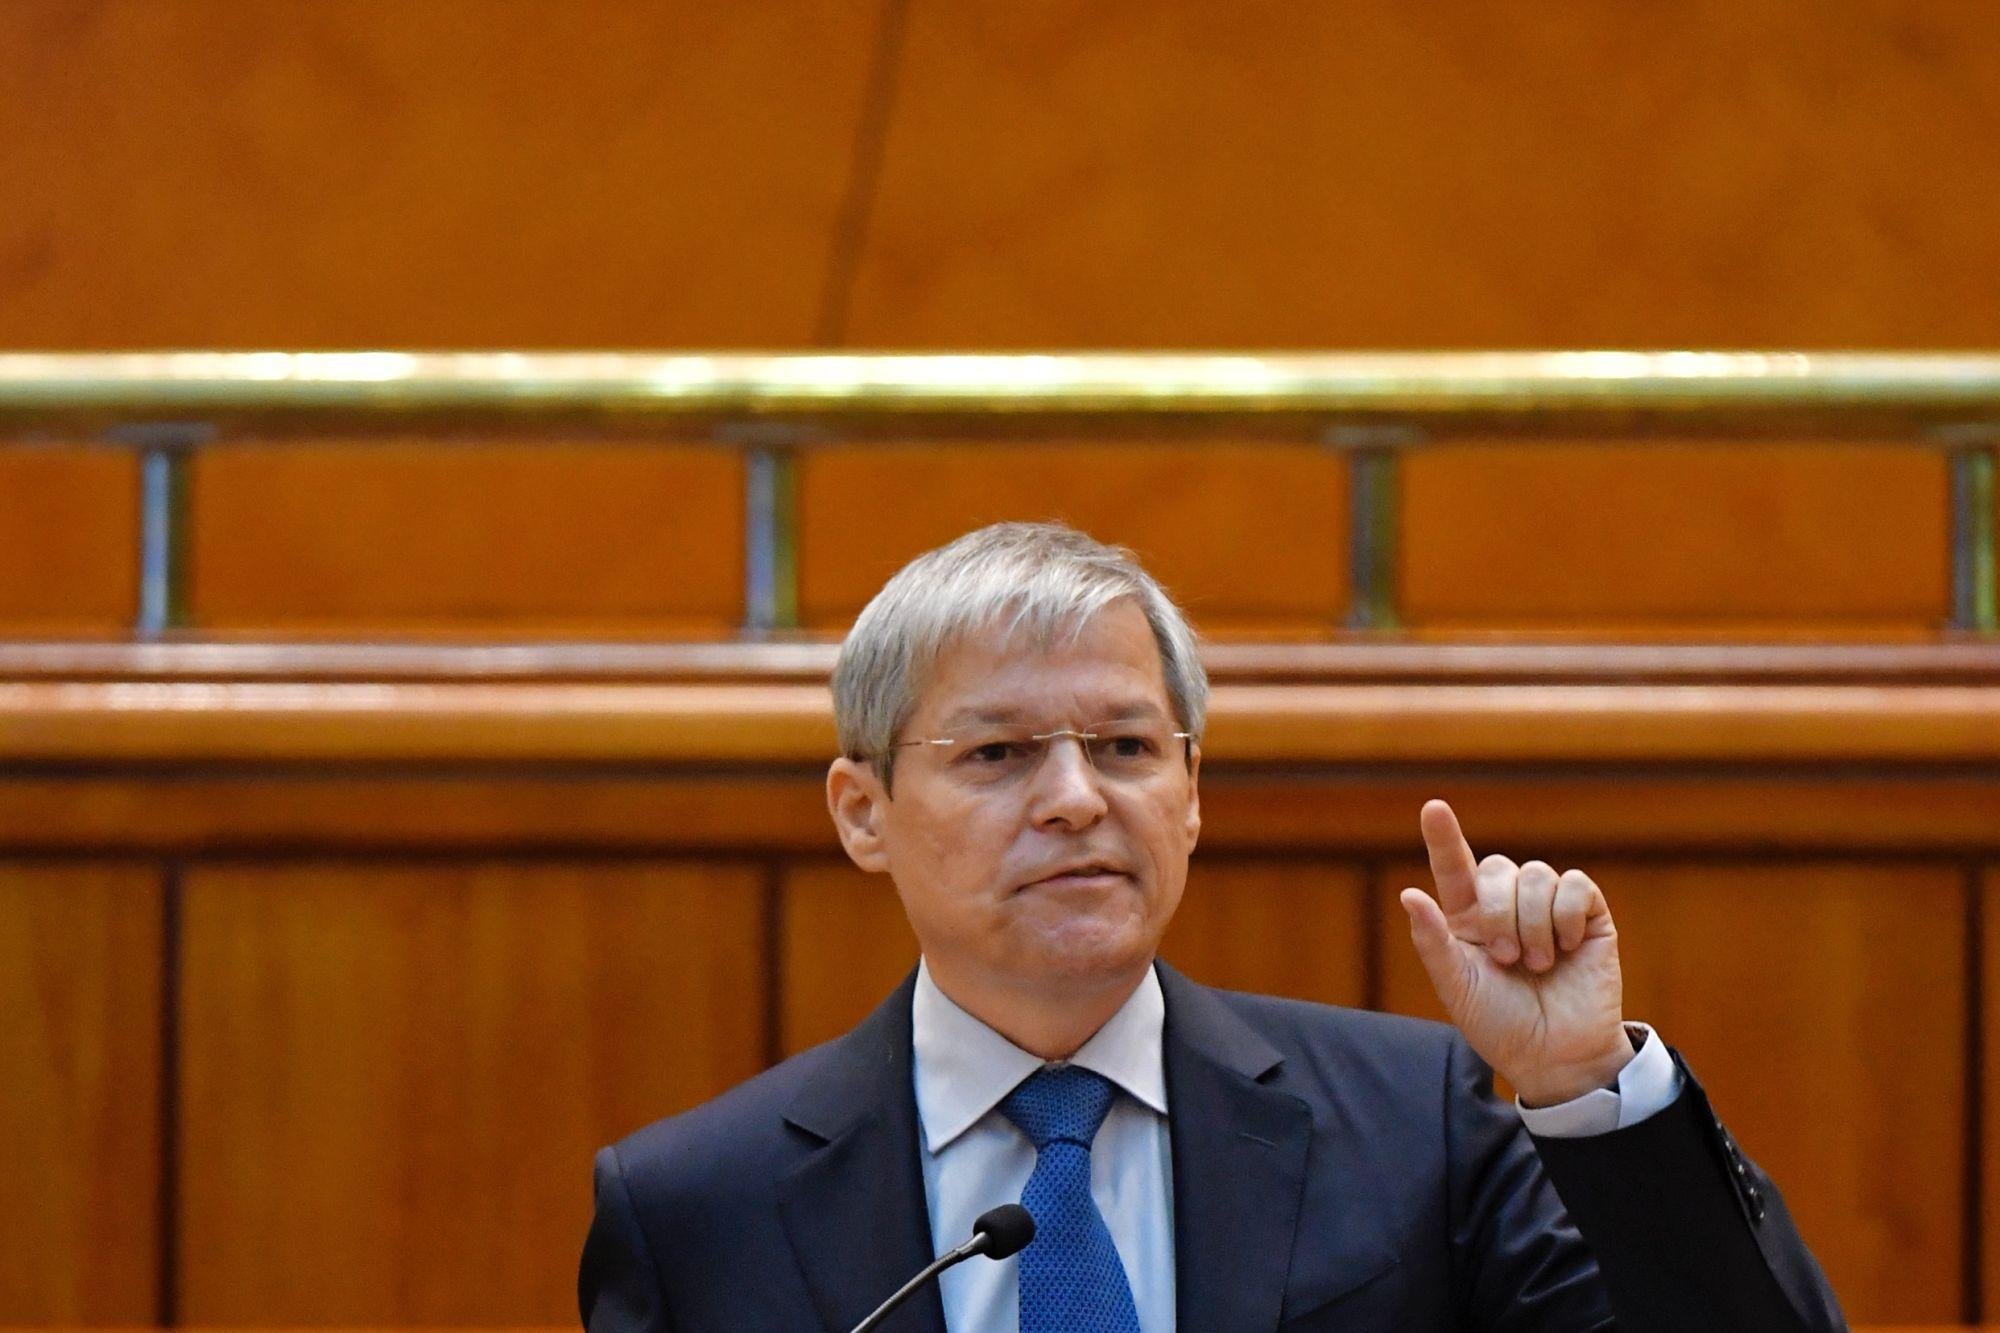  Surse: Nicolae Ciucă l-a sunat pe liderul USR Dacian Cioloş